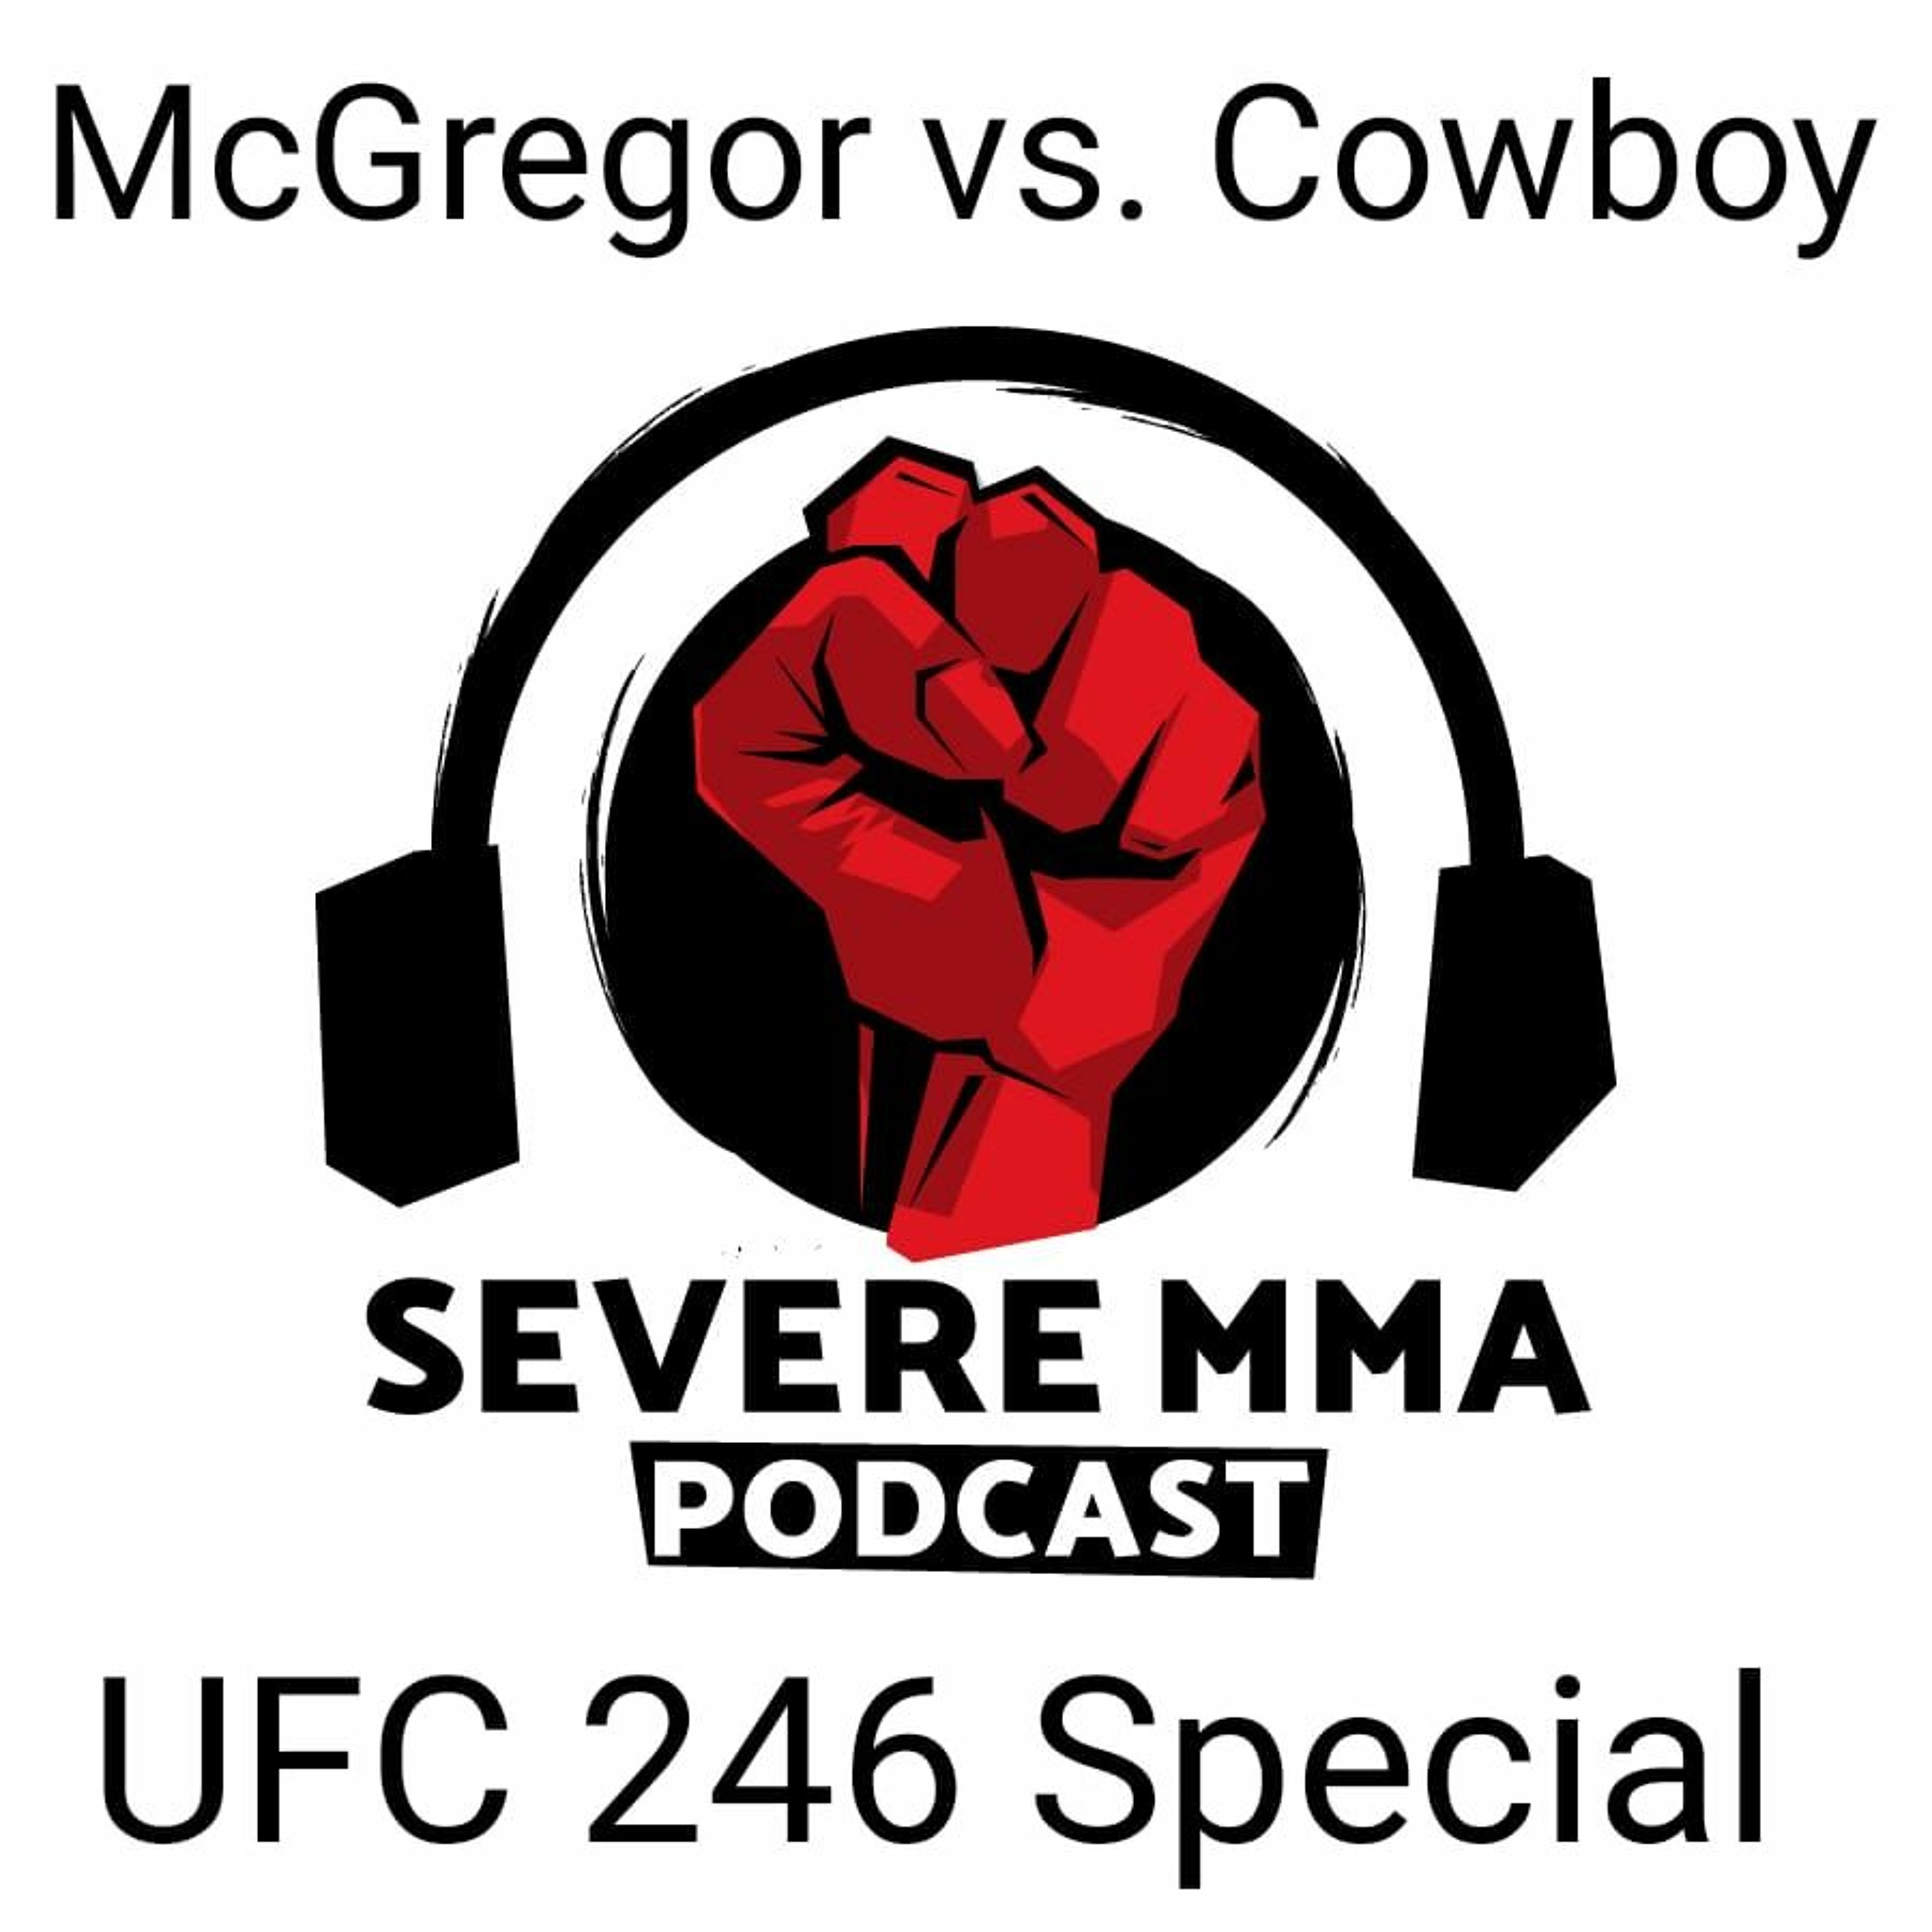 McGregor vs. Cerrone Special - Episode 242